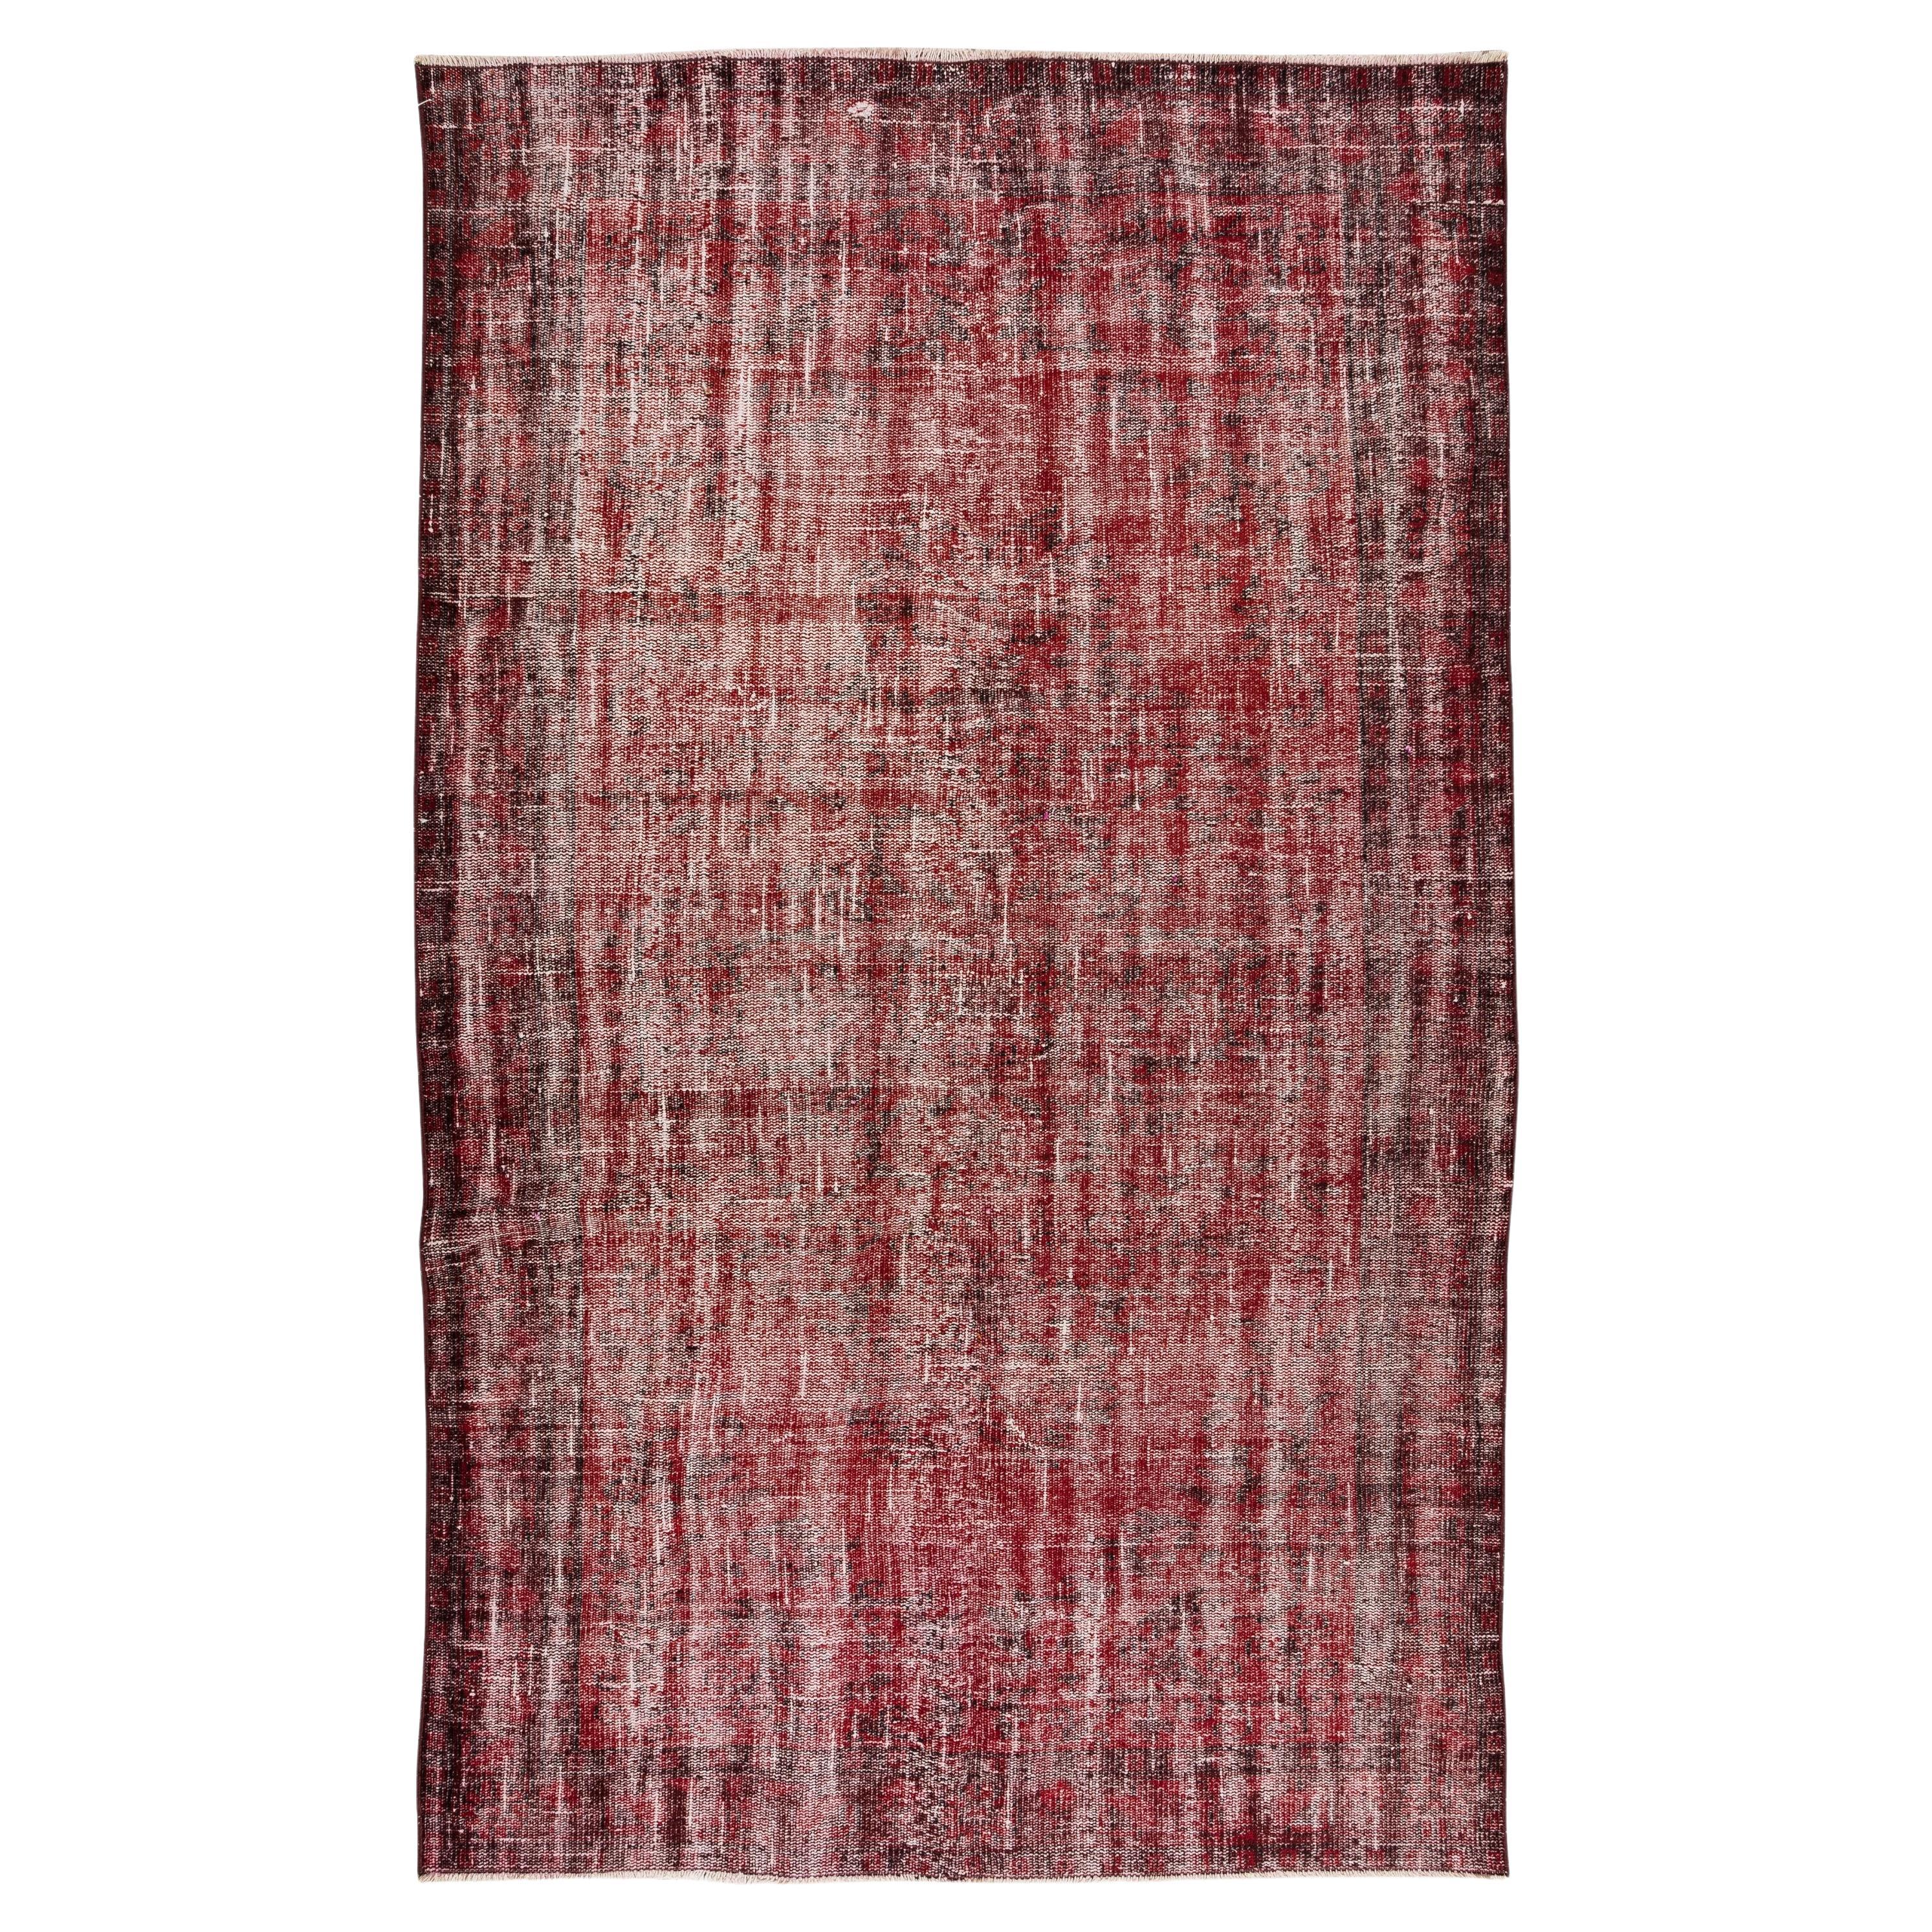 5.3x9 Ft Roter moderner Teppich, handgeknüpfter anatolischer Mid-Century-Teppich